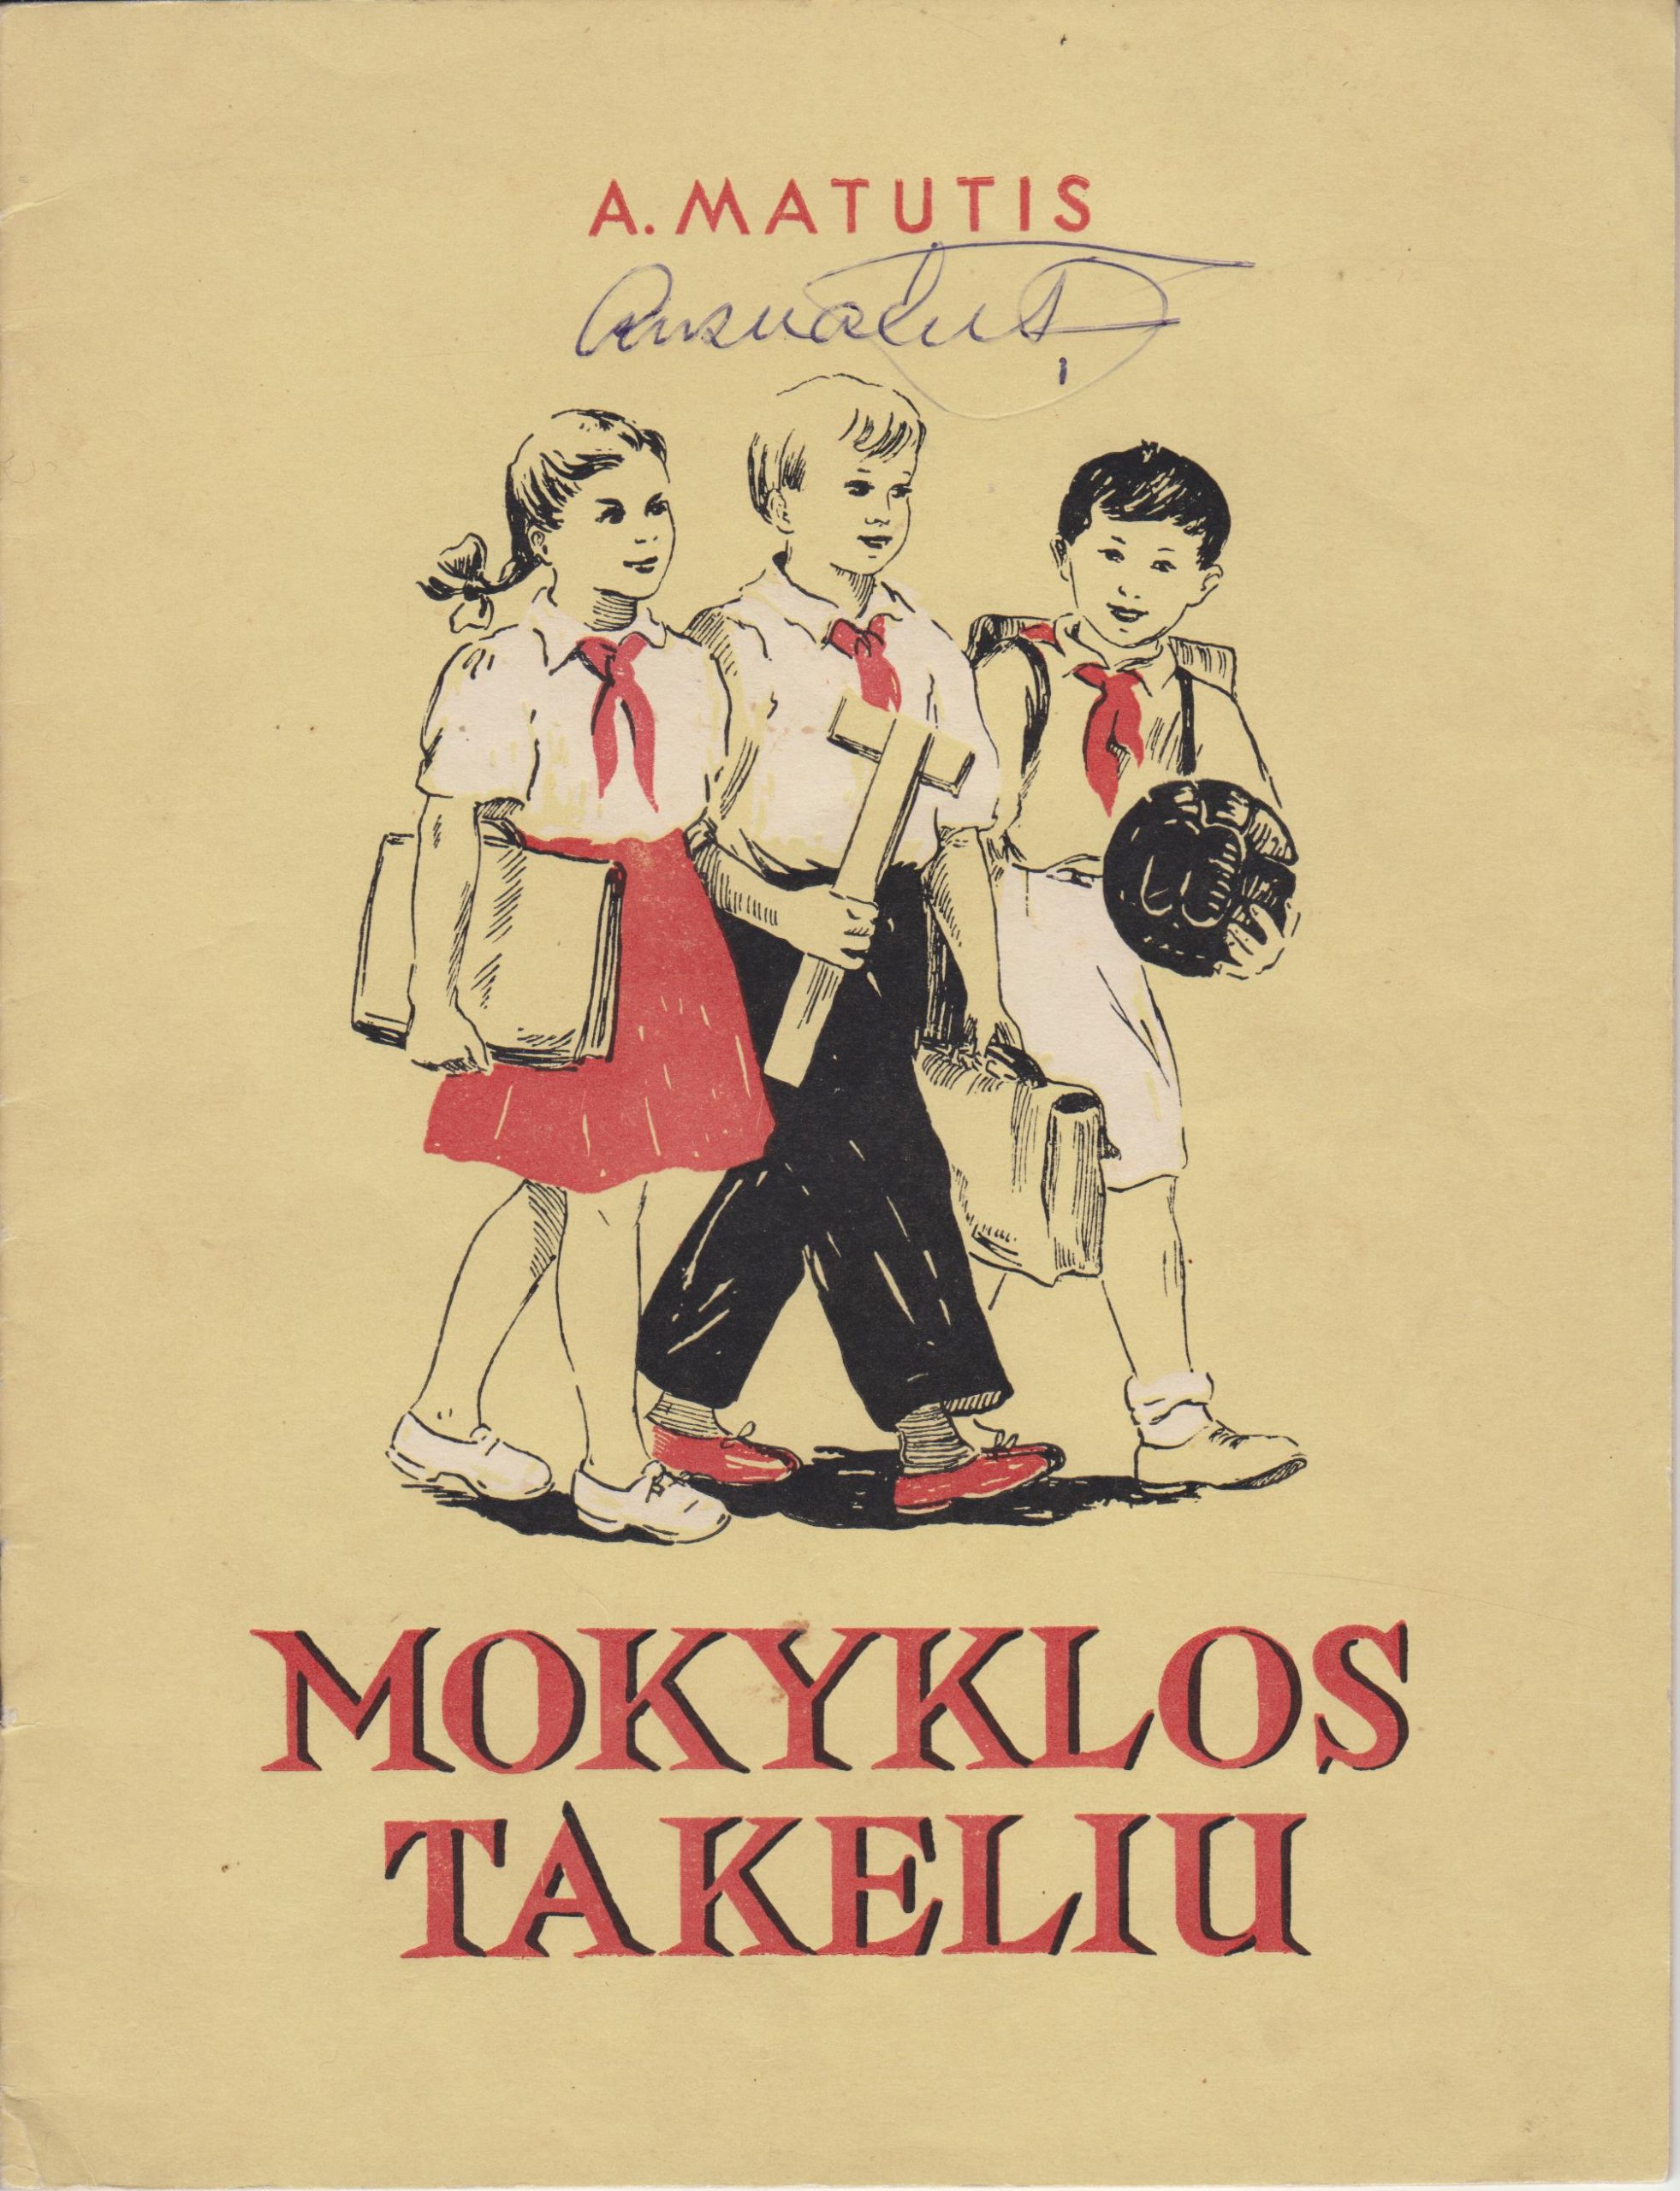 A. Matutis. Mokyklos takeliu. Vilnius: Valstybinė grožinės literatūros leidykla, 1952 m. MLLM GEK 19833